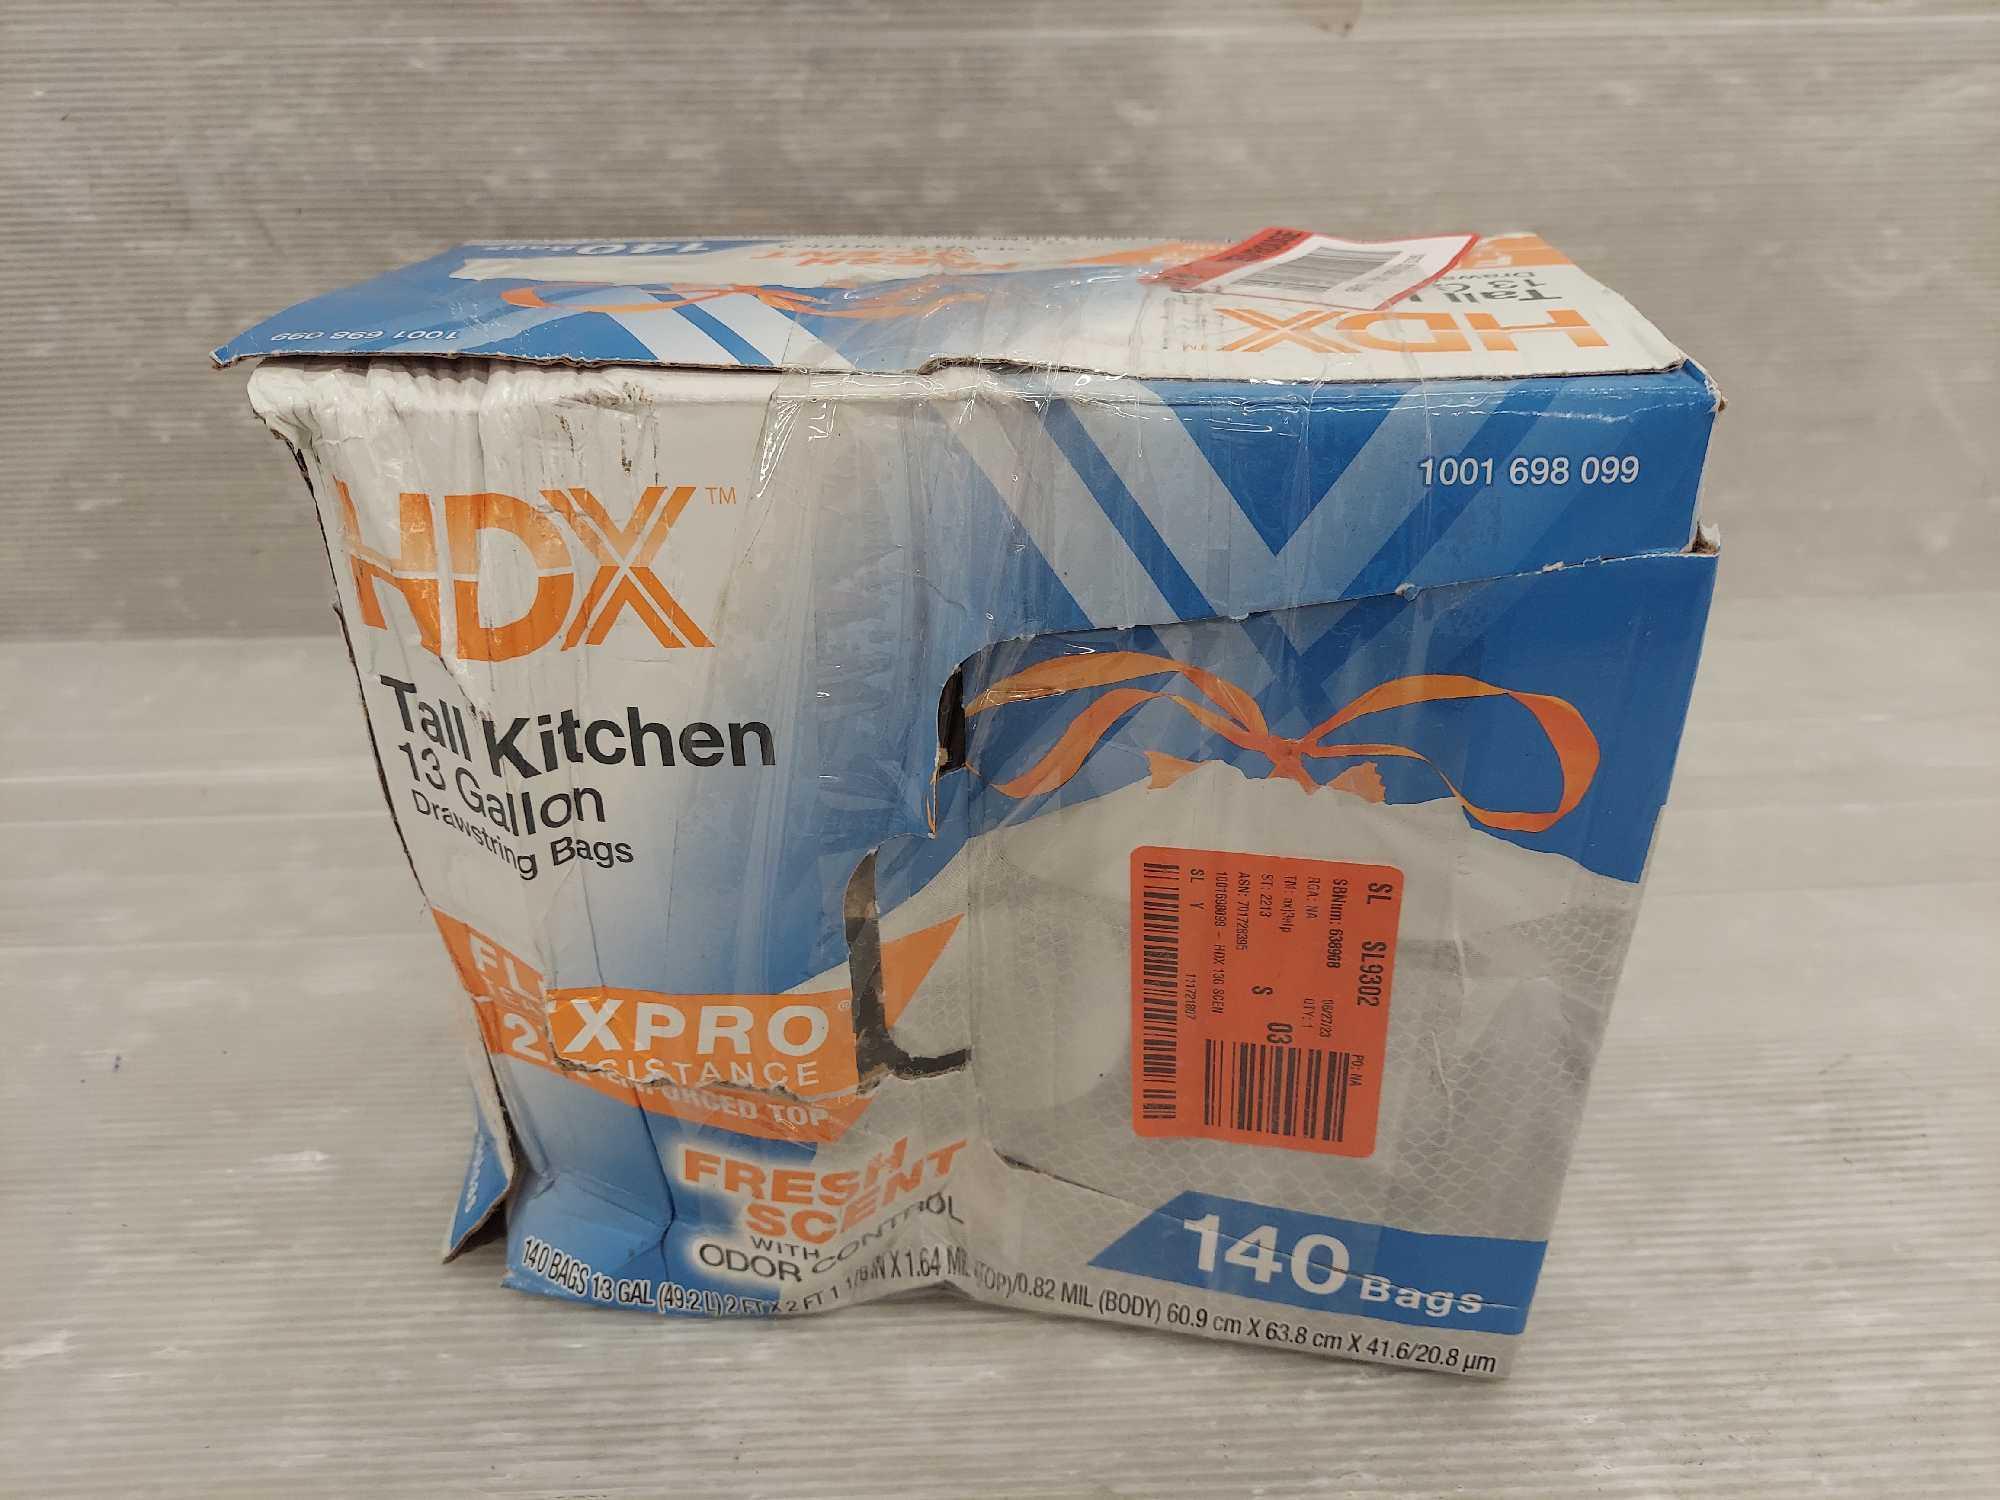 HDX FlexPro 13 Gallon Fresh Scent Kitchen Trash Bag (140-Count